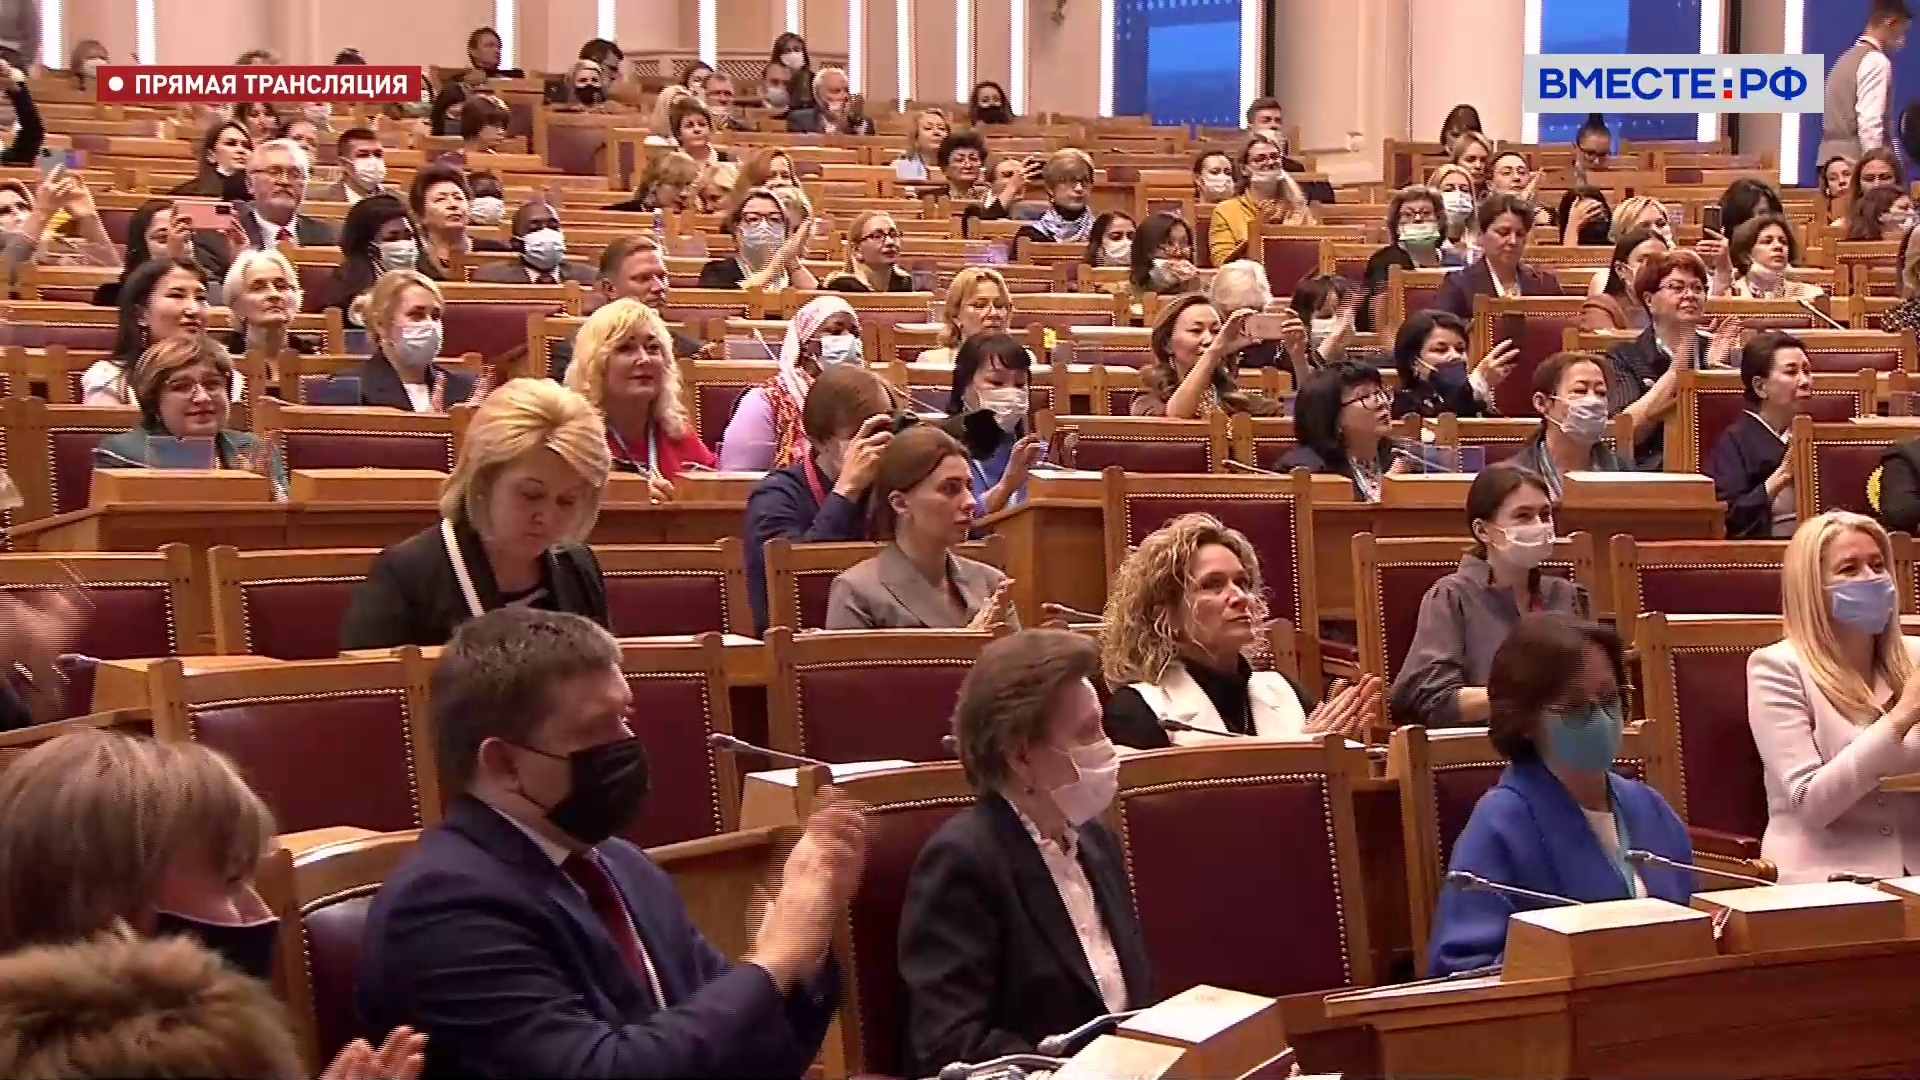 ЕЖФ внес серьезный вклад в продвижение глобальной женской повестки, заявила Матвиенко